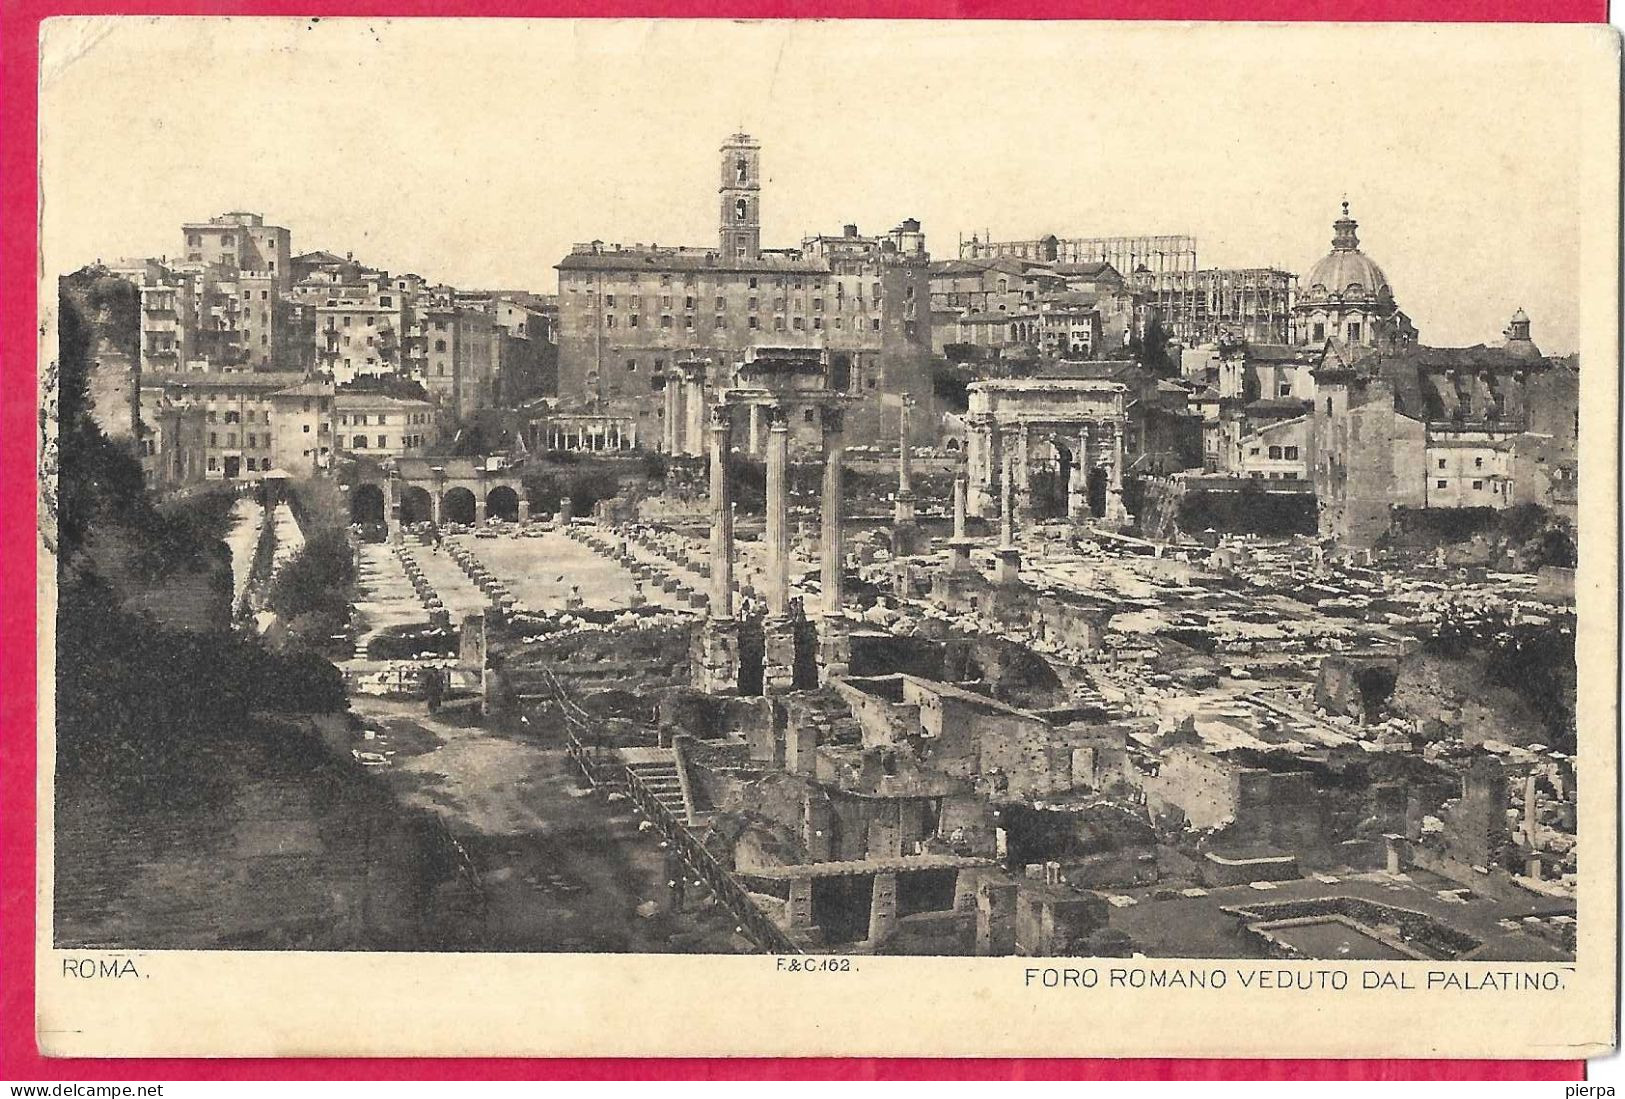 ROMA - FORO ROMANO - FORMATO PICCOLO - VIAGGIATA 1895 PER LA FRANCIA - Other Monuments & Buildings